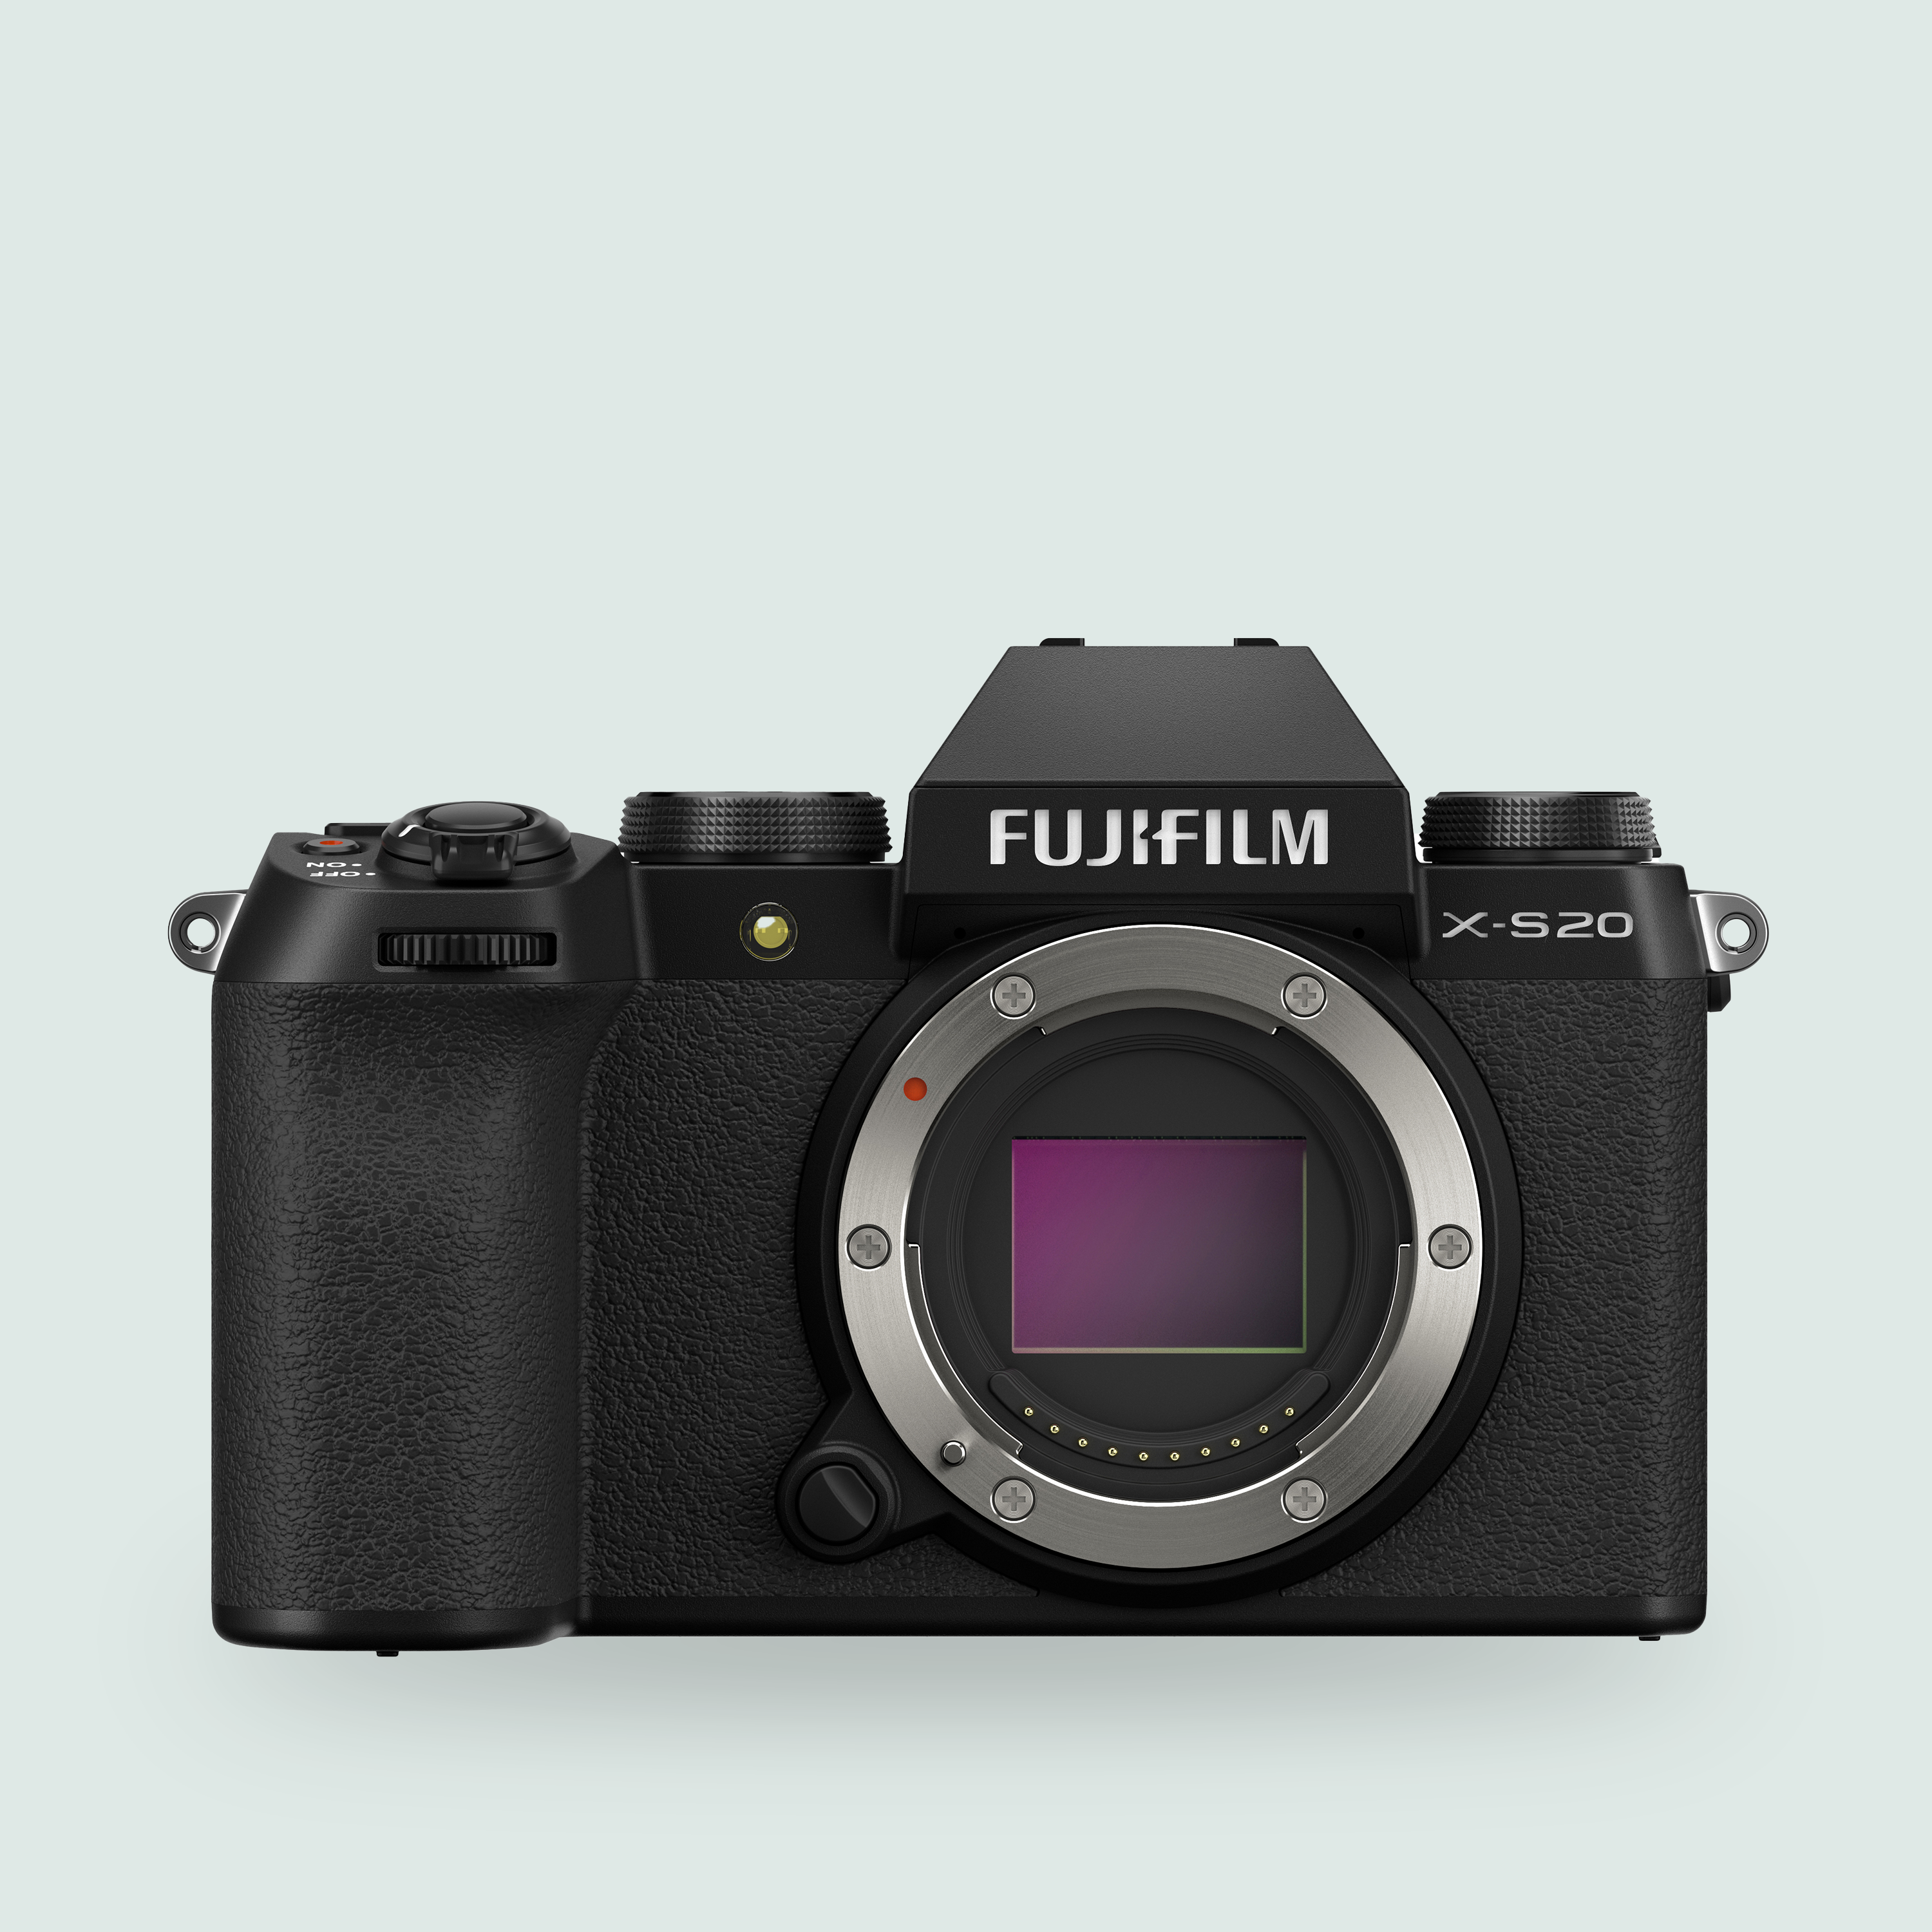 Fujifilm X-S20 body only